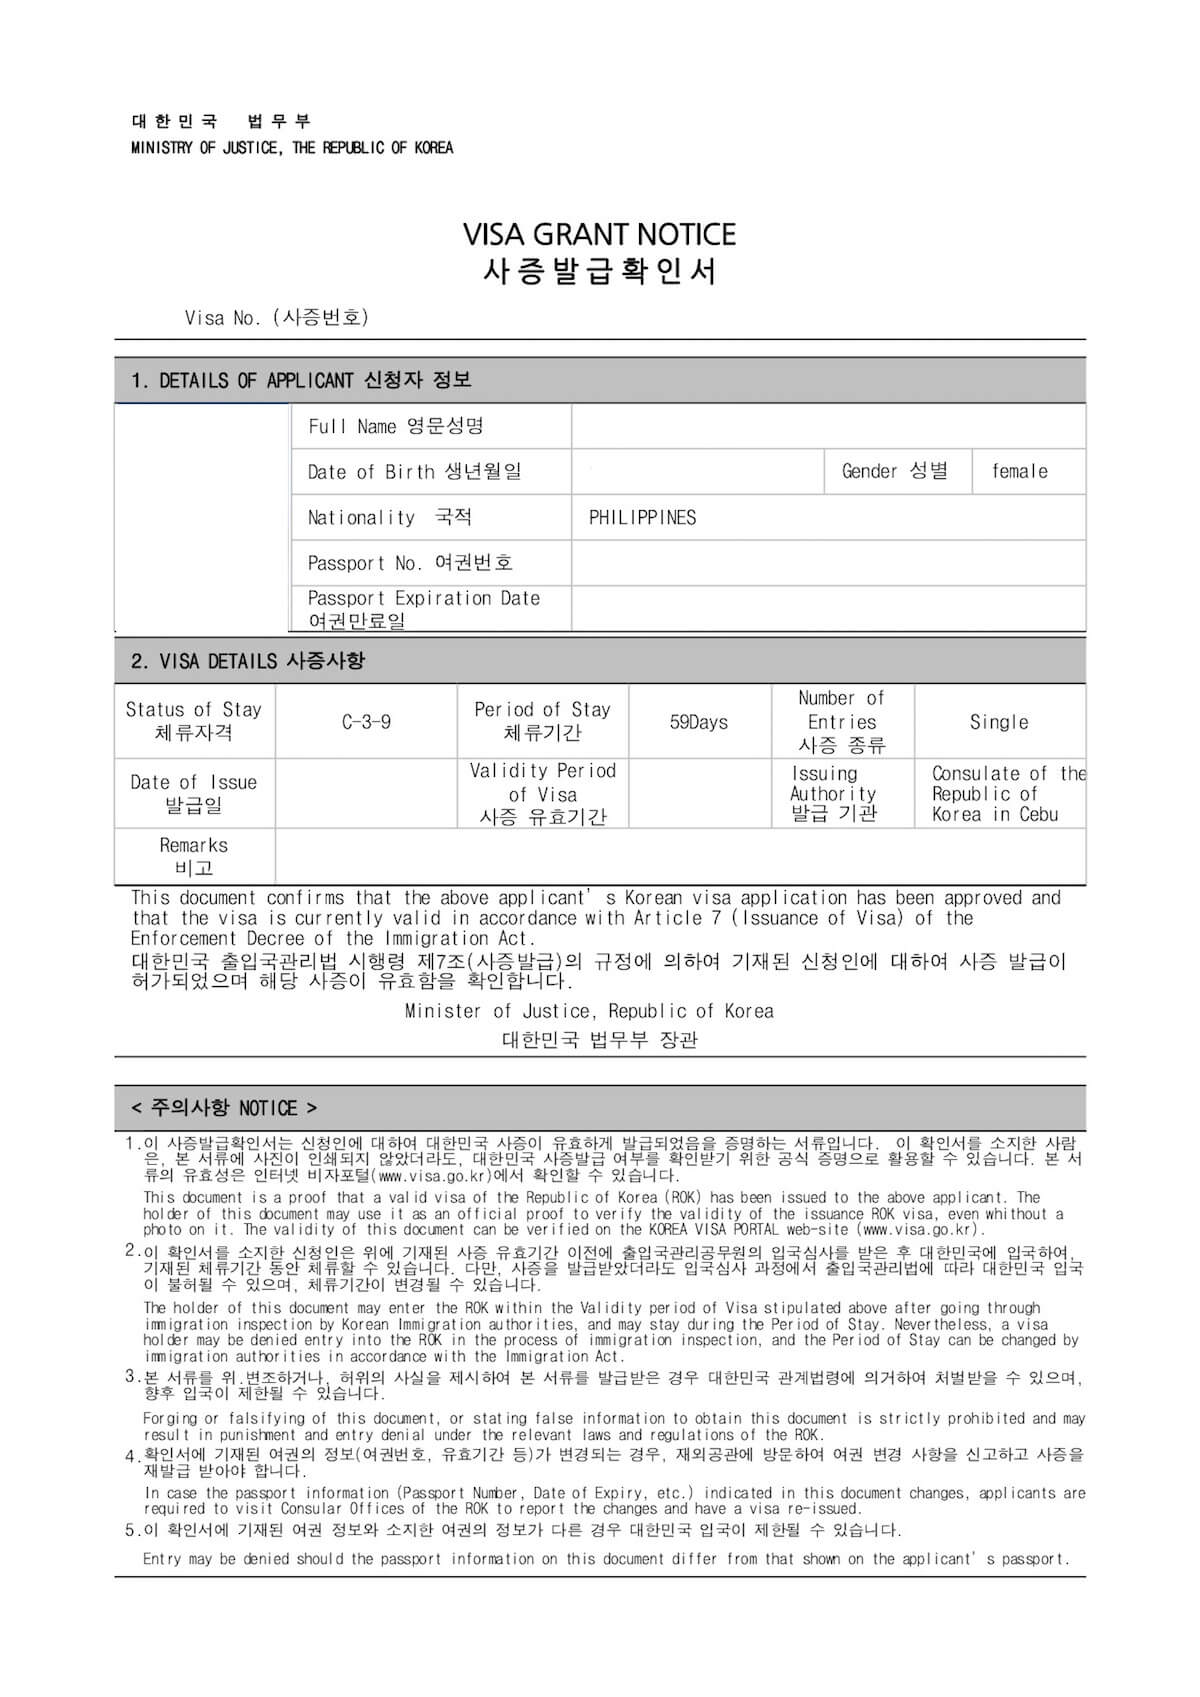 Korean Visa in Cebu - Grant Notice